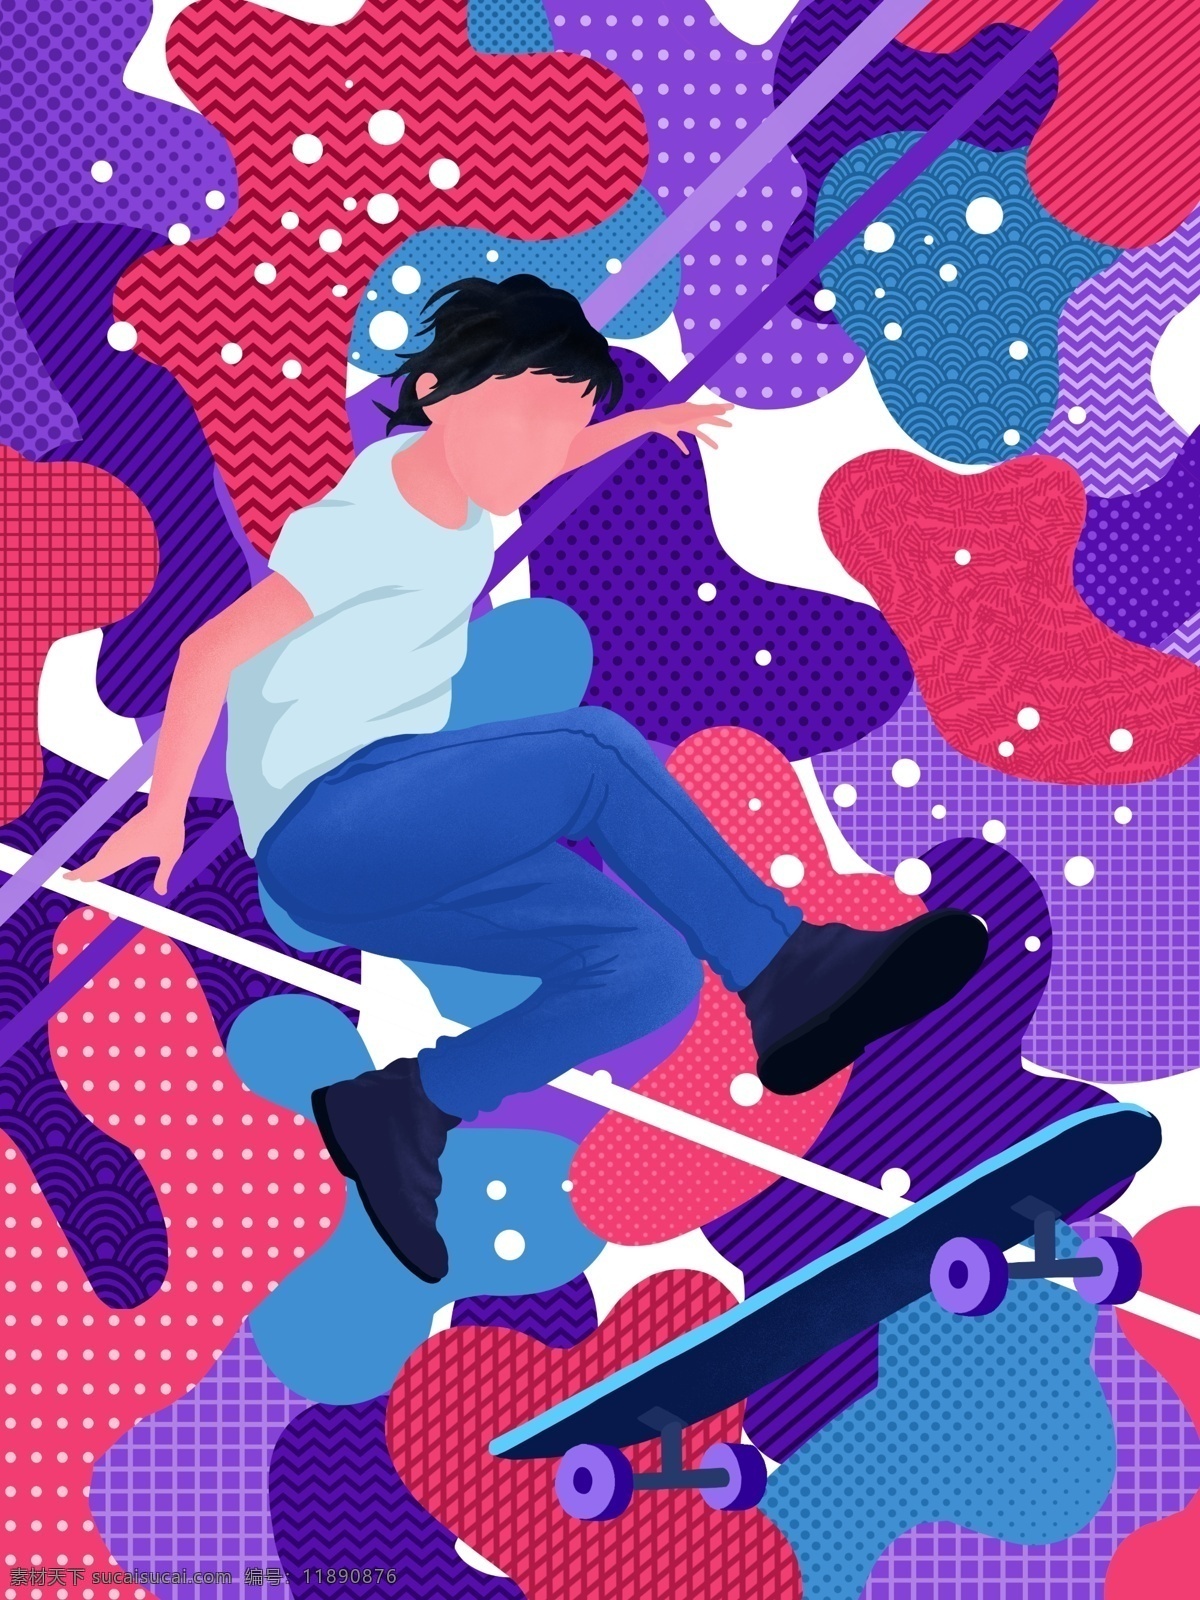 游走 梦 滑板 男孩 系列 插画 运动 锻炼 抽象插画 游走的梦 绚丽多彩 微信用图